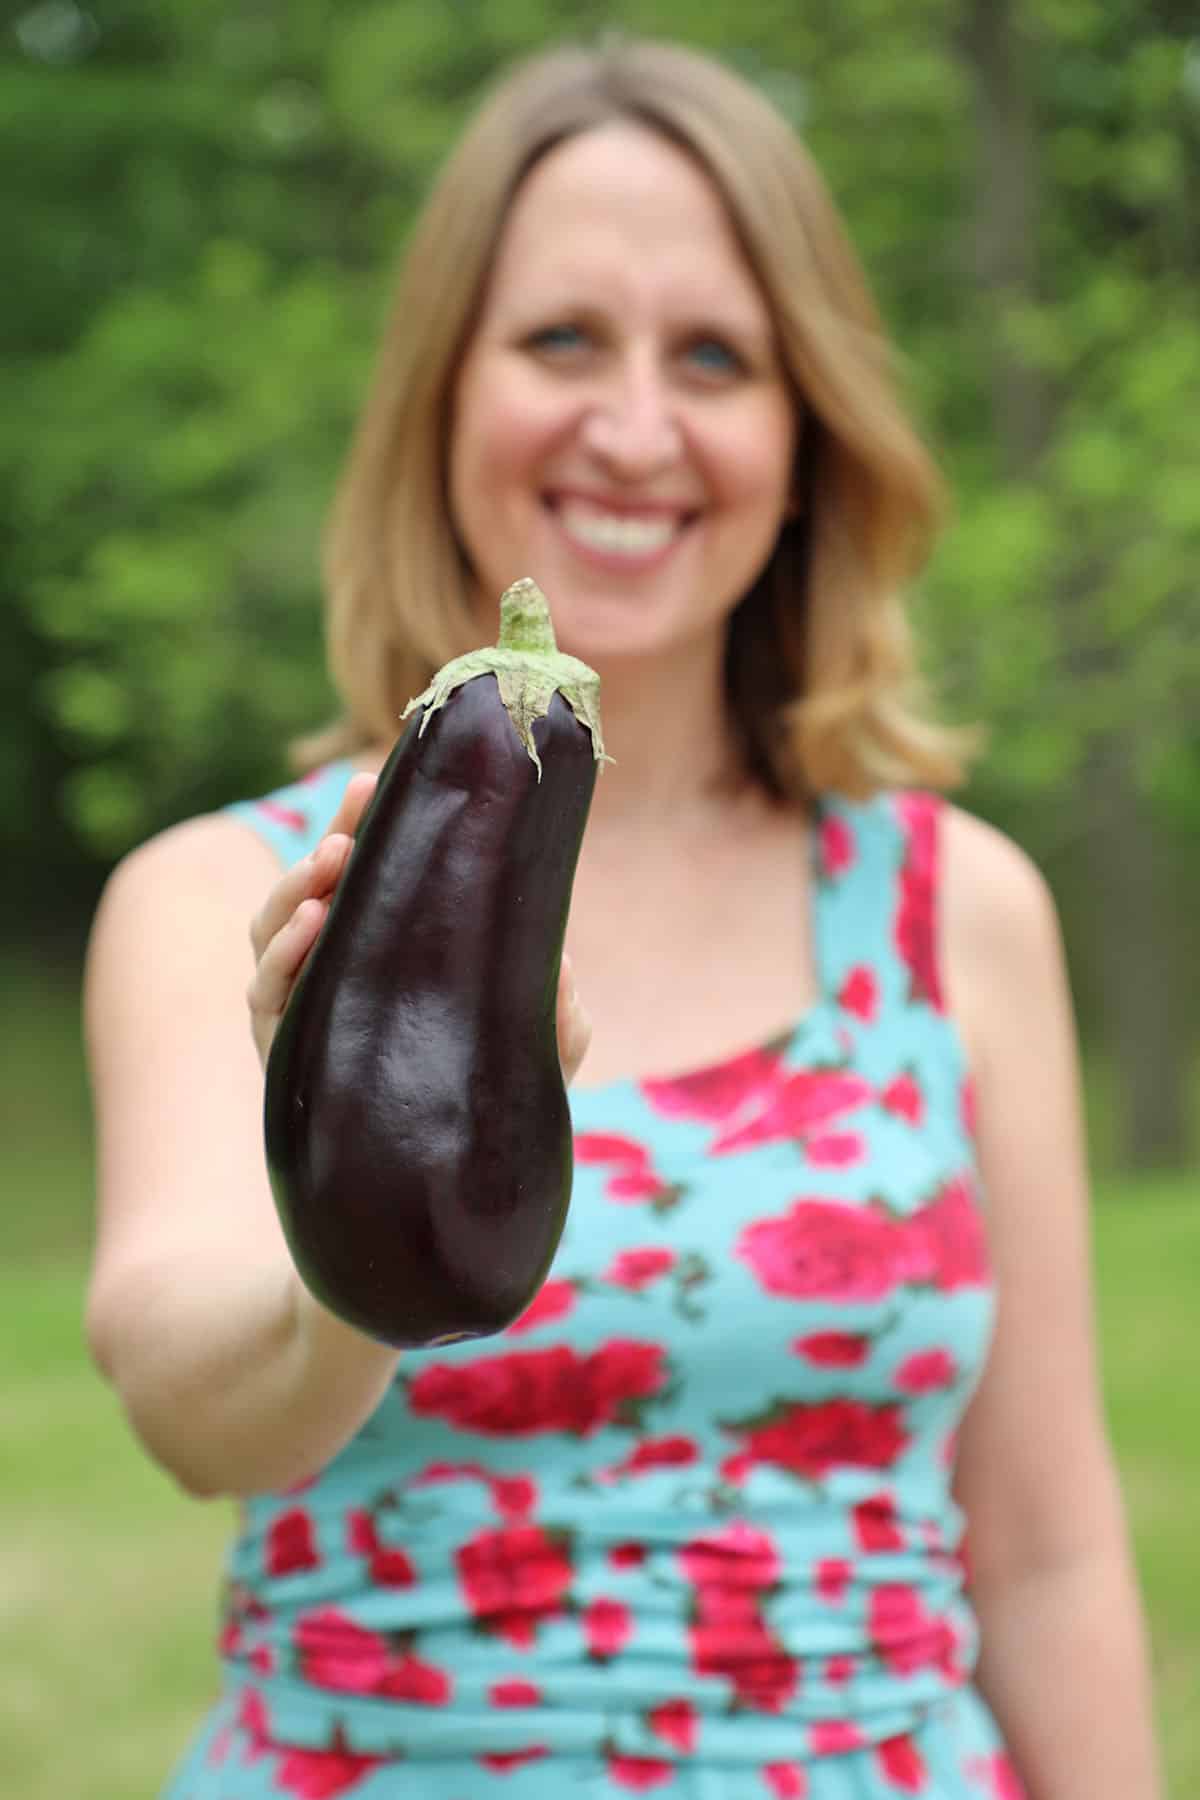 Cadry holding eggplant.